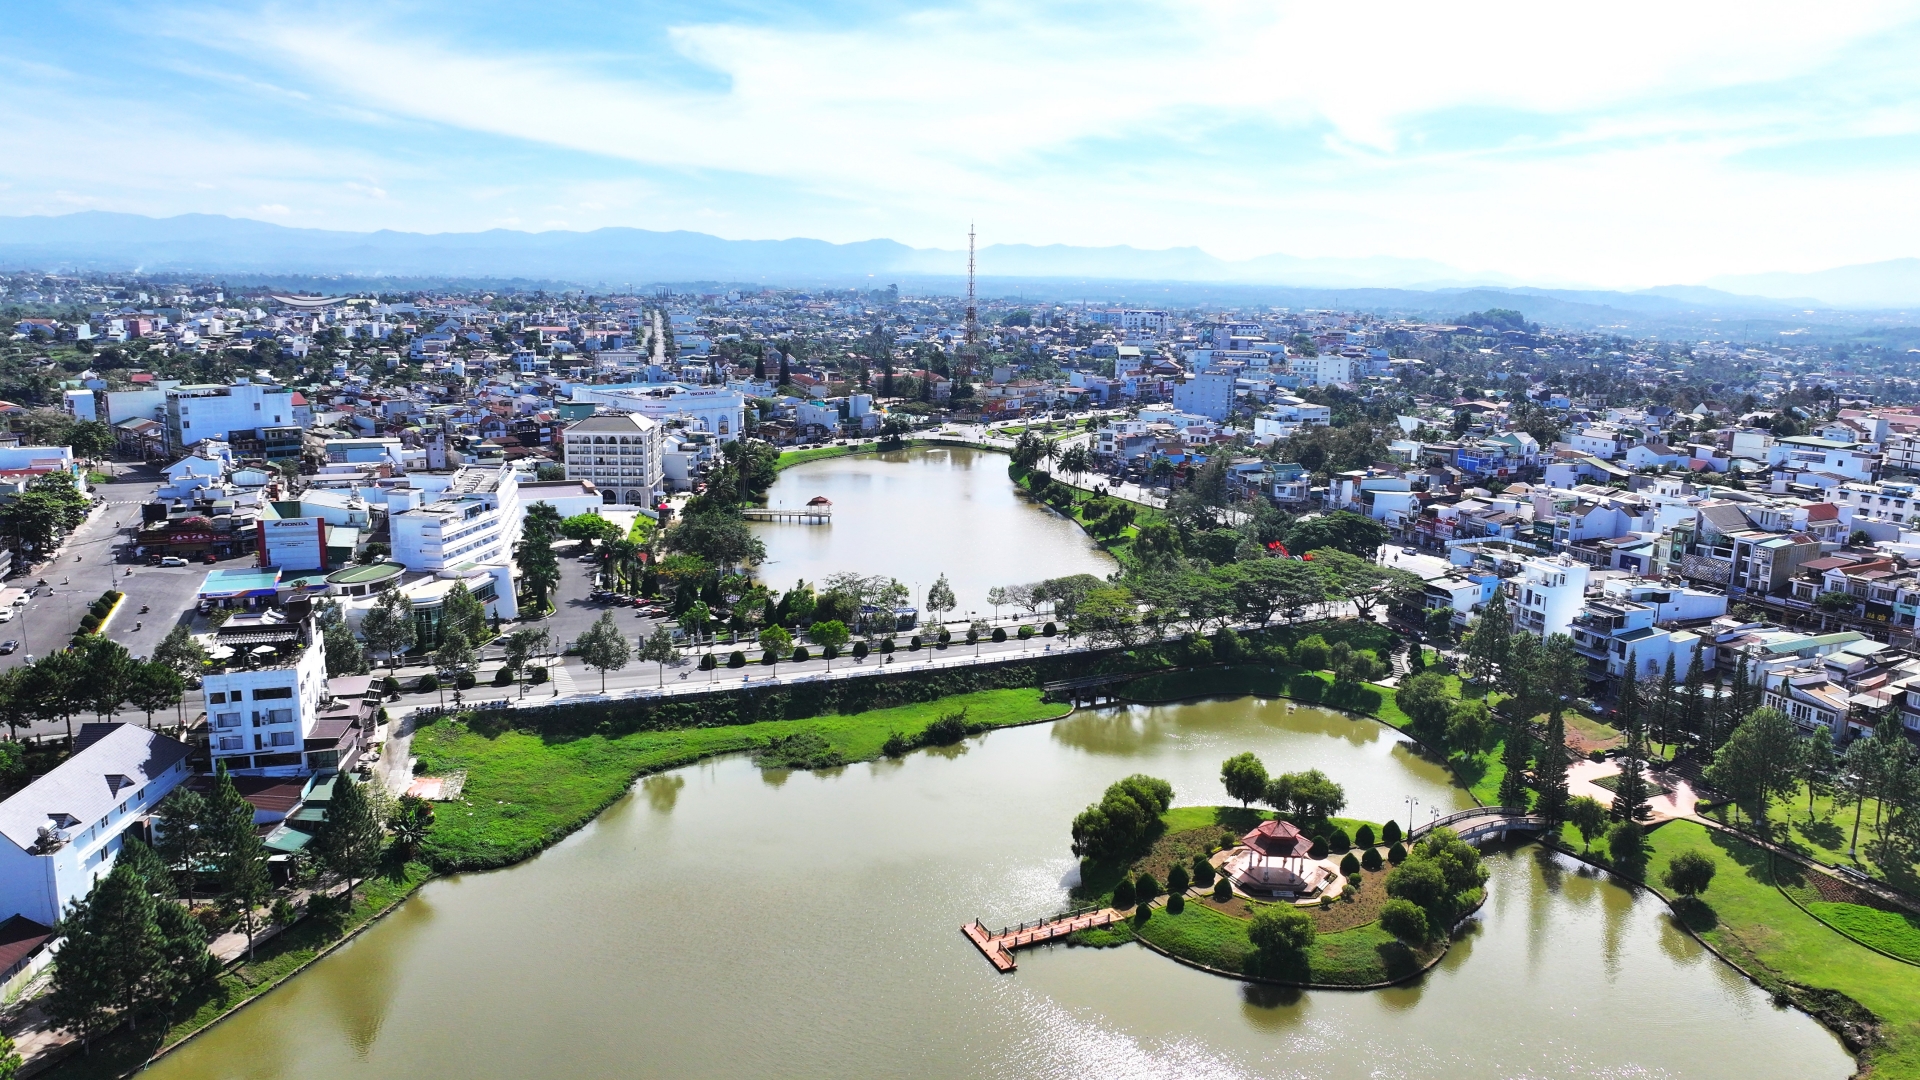 Hồ Bảo Lộc là một trong những điểm nhấn để tiếp tục đầu tư phát triển theo hướng hiện đại trong quy hoạch cụ thể xây dựng TP Bảo Lộc và vùng phụ cận đến năm 2040